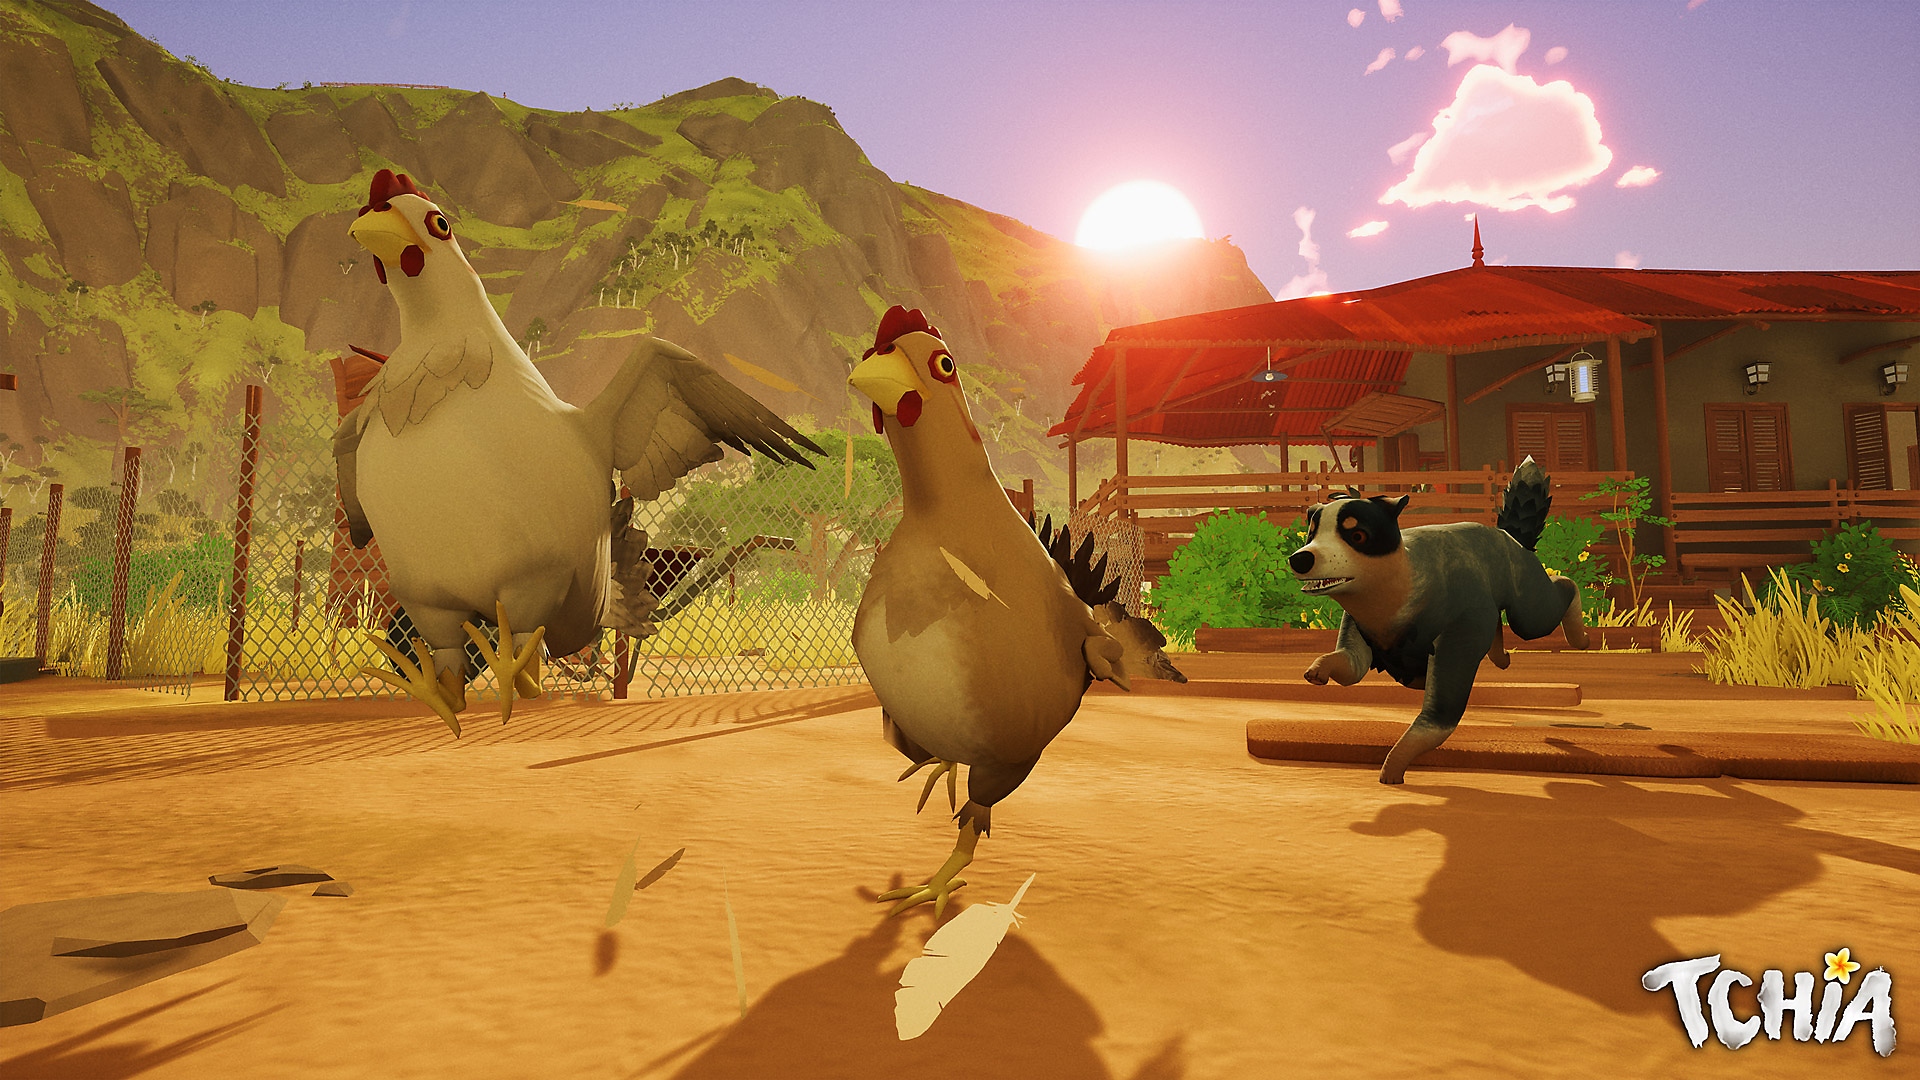 لقطة شاشة لـ Tchia يظهر فيها كلب يجري خلف بعض الدجاجات